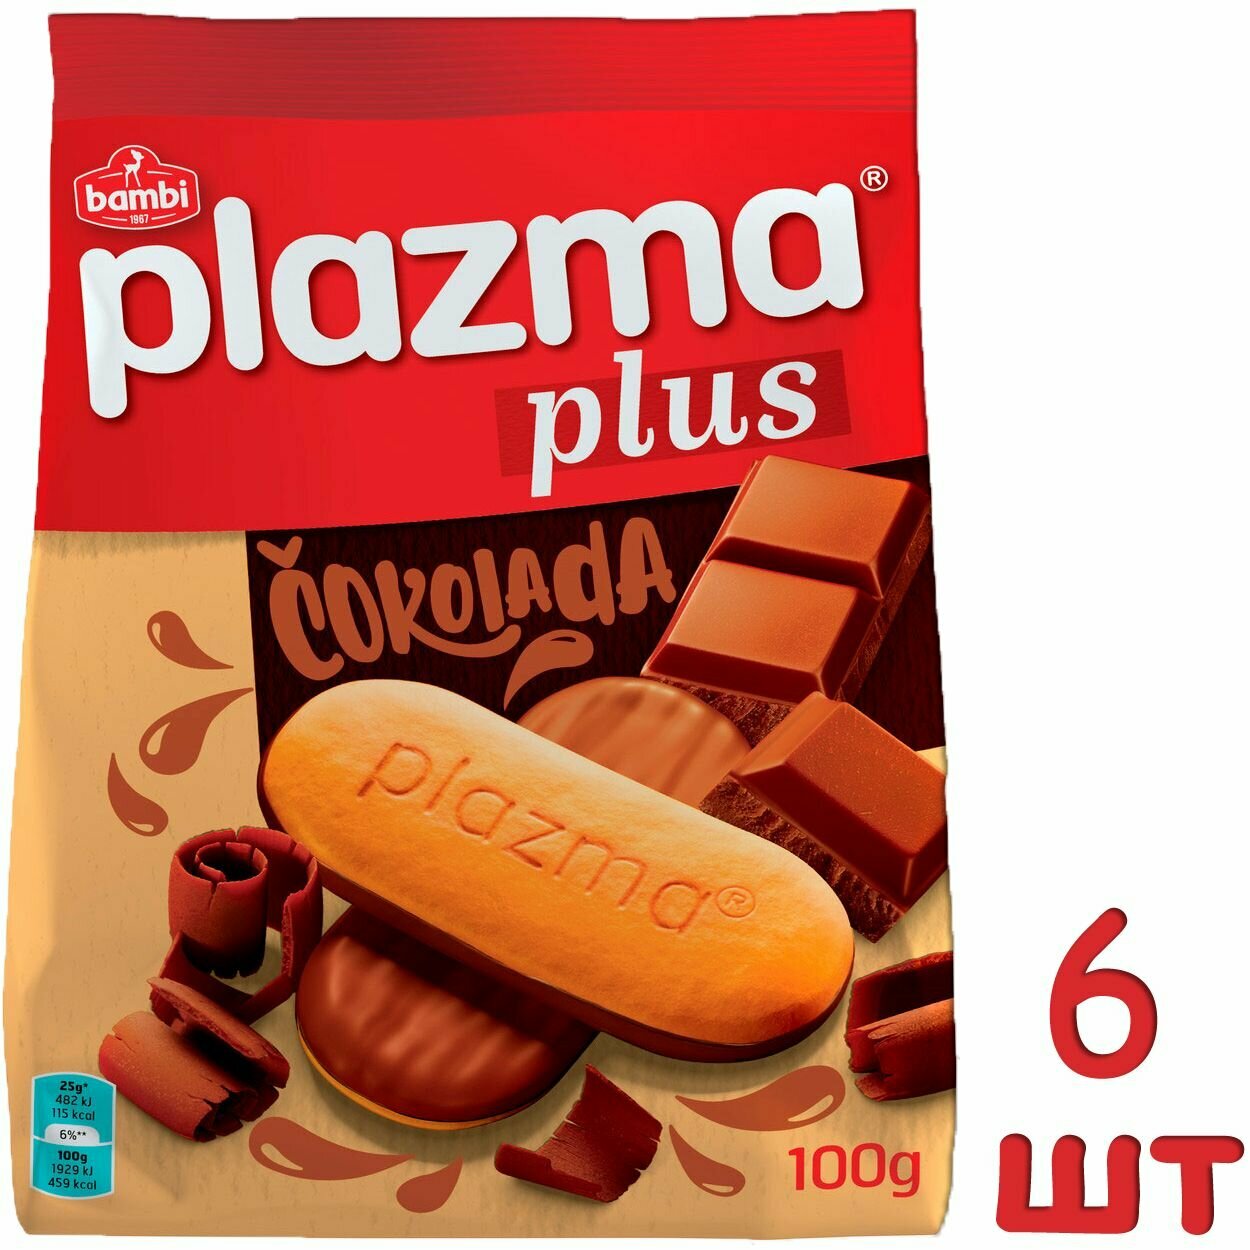 Бисквитное печенье Плазма Плюс с шоколадом 100 гр * 6 шт (с витаминами B1 B3 B6 C) / Plazma Plus 100 g